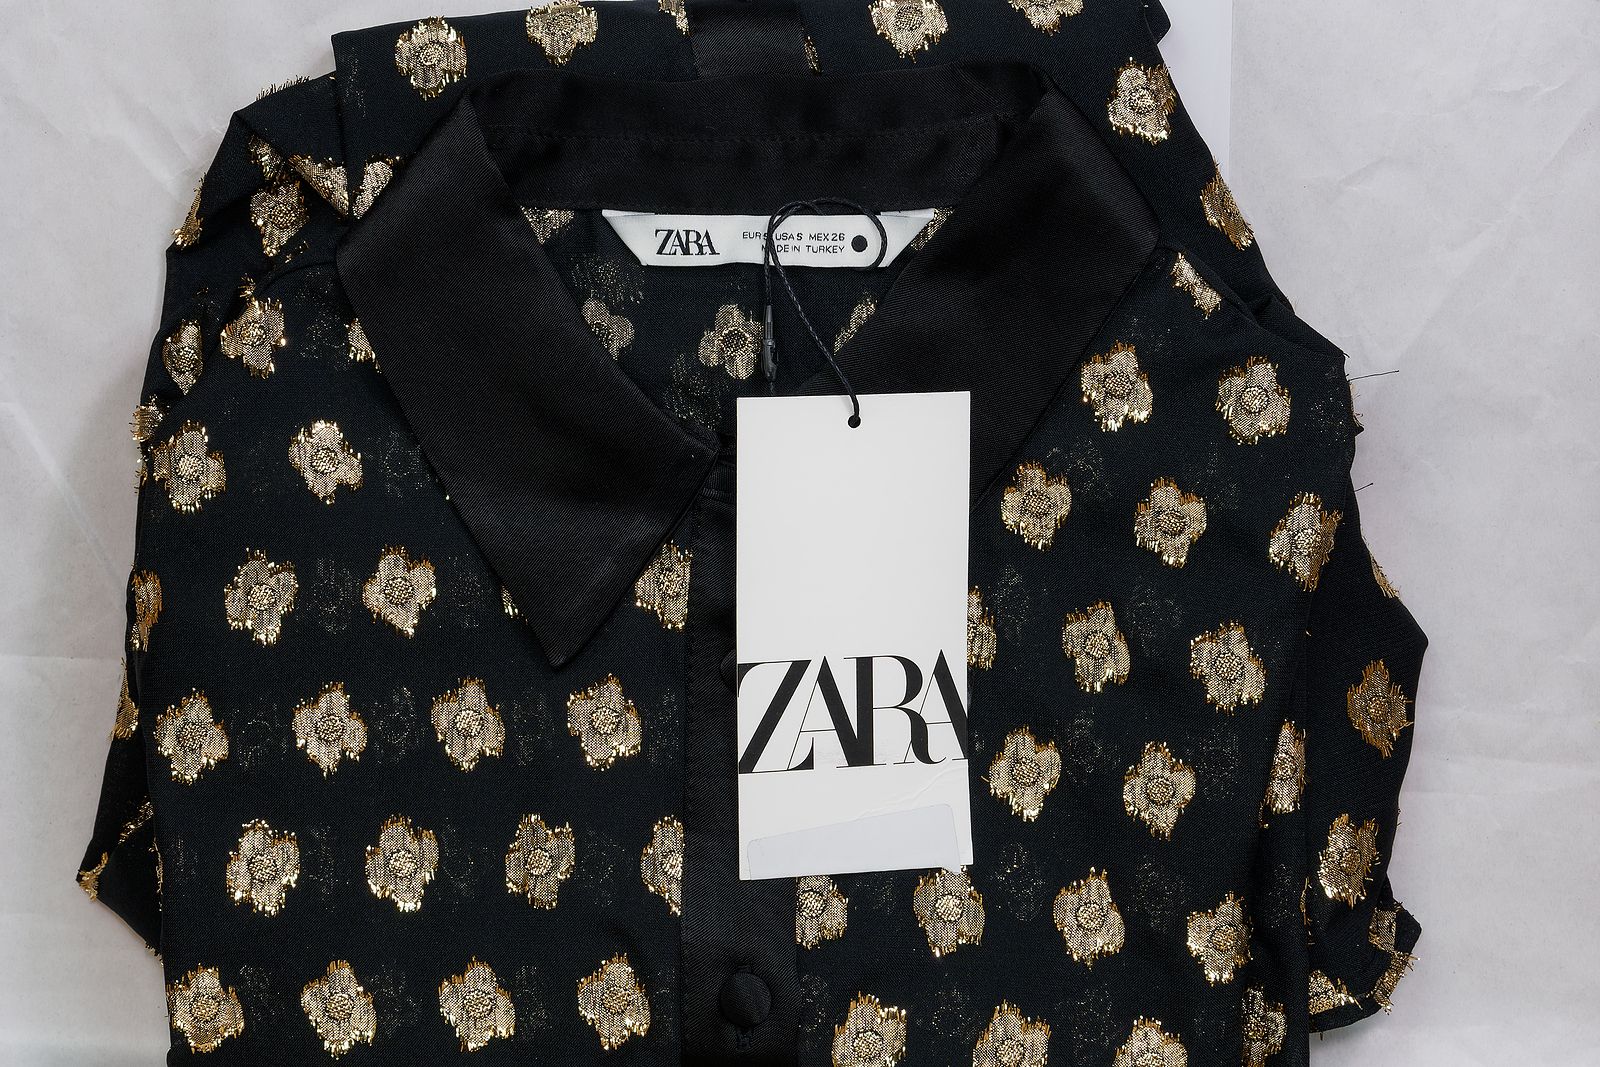 Qué significan las figuras de las etiquetas de Zara?